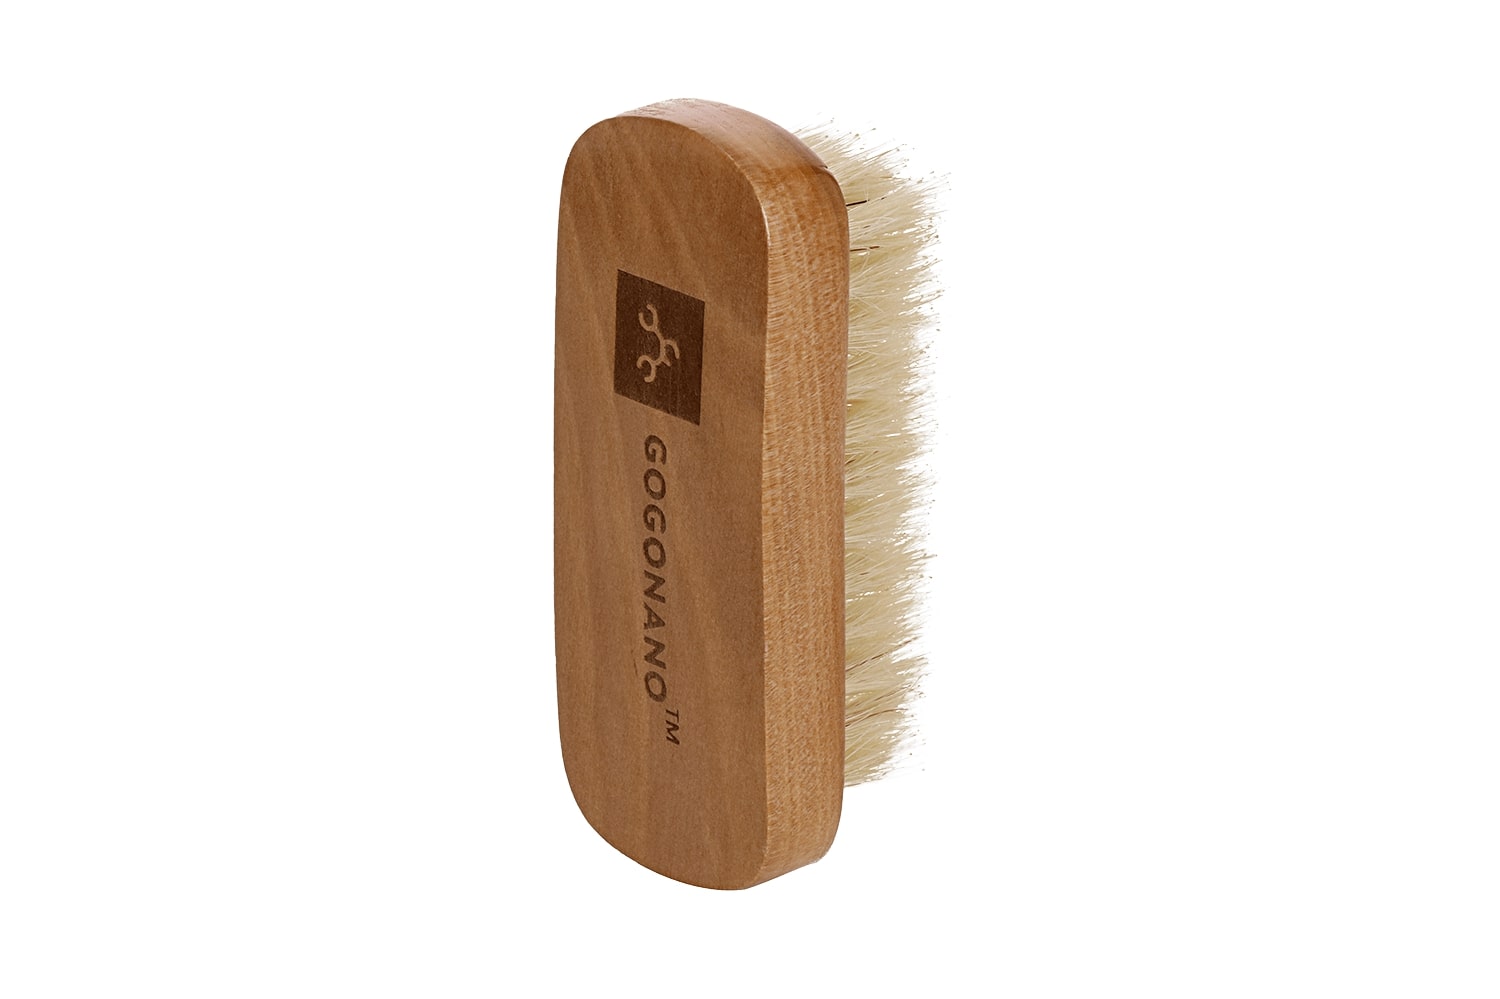 Natural gogonano pig hair wooden shoebrush